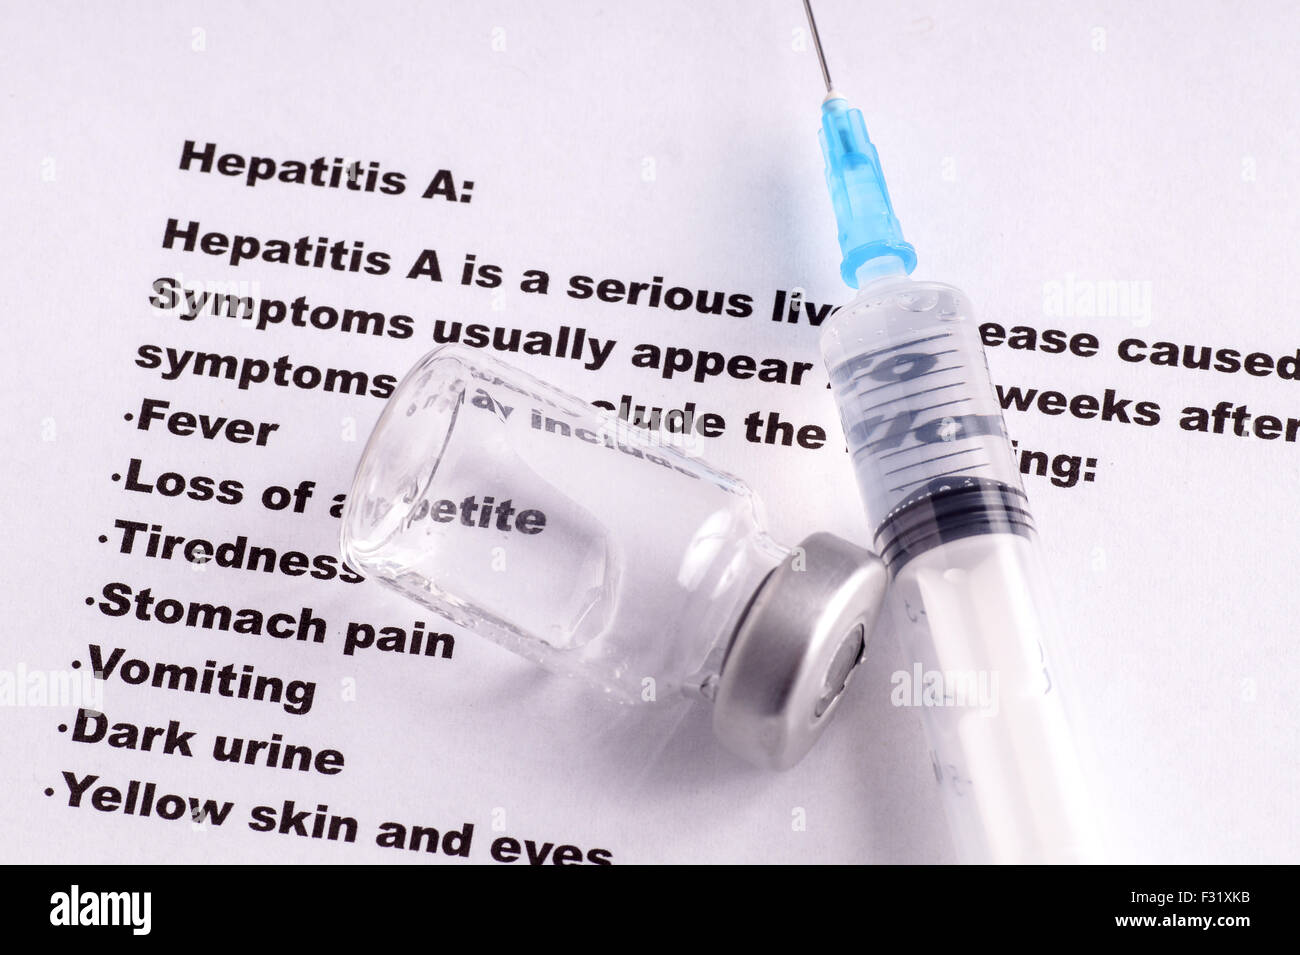 La vaccinazione contro l epatite, i sintomi e gli effetti collaterali Foto Stock